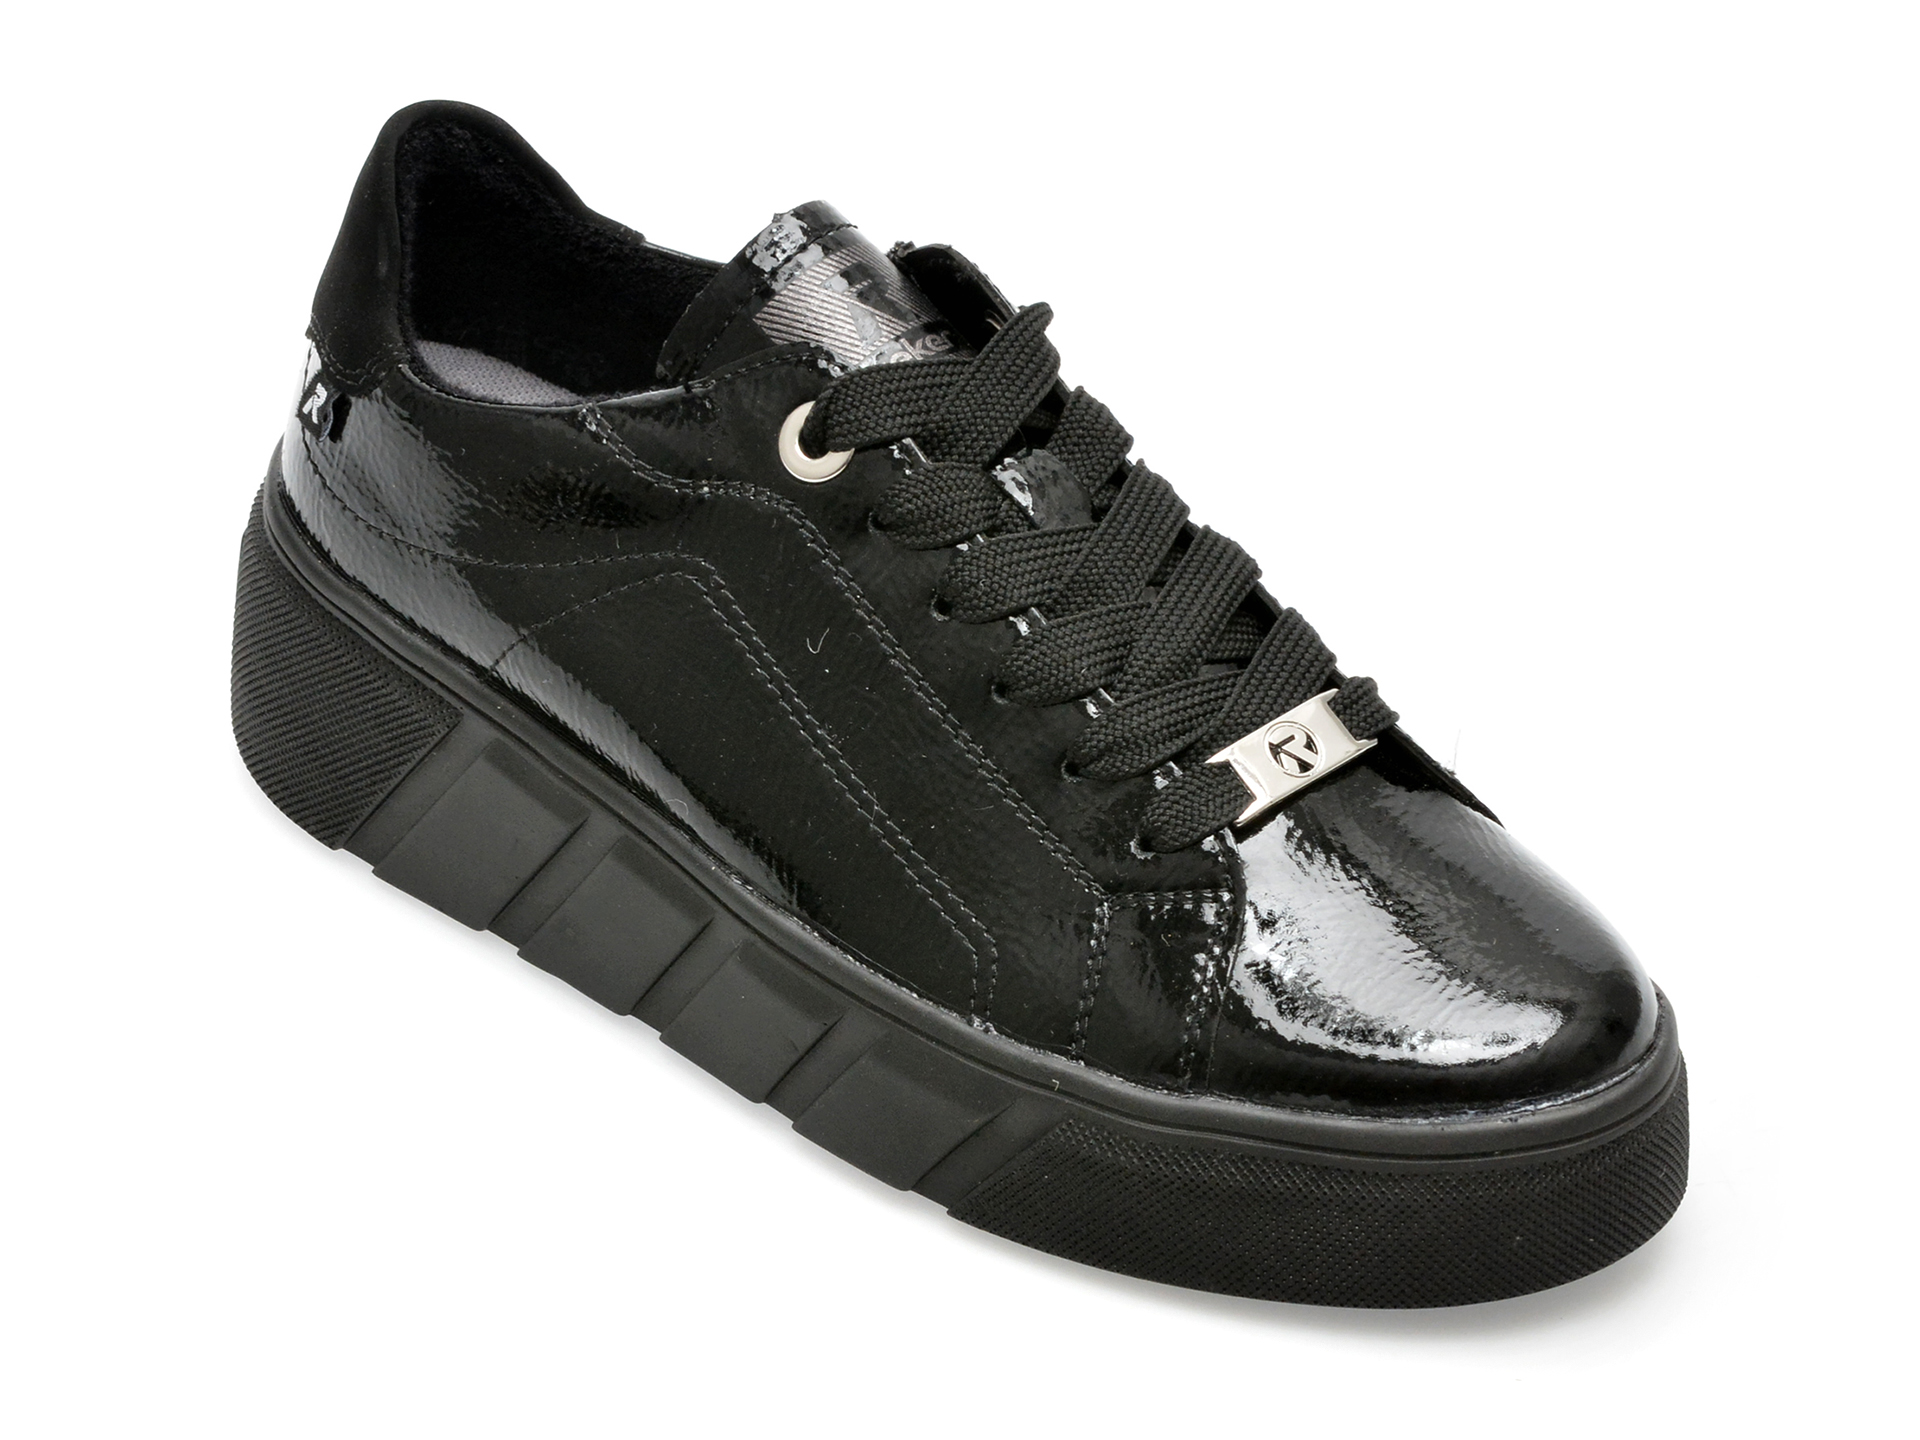 Pantofi RIEKER negri, W0501, din piele naturala /femei/pantofi